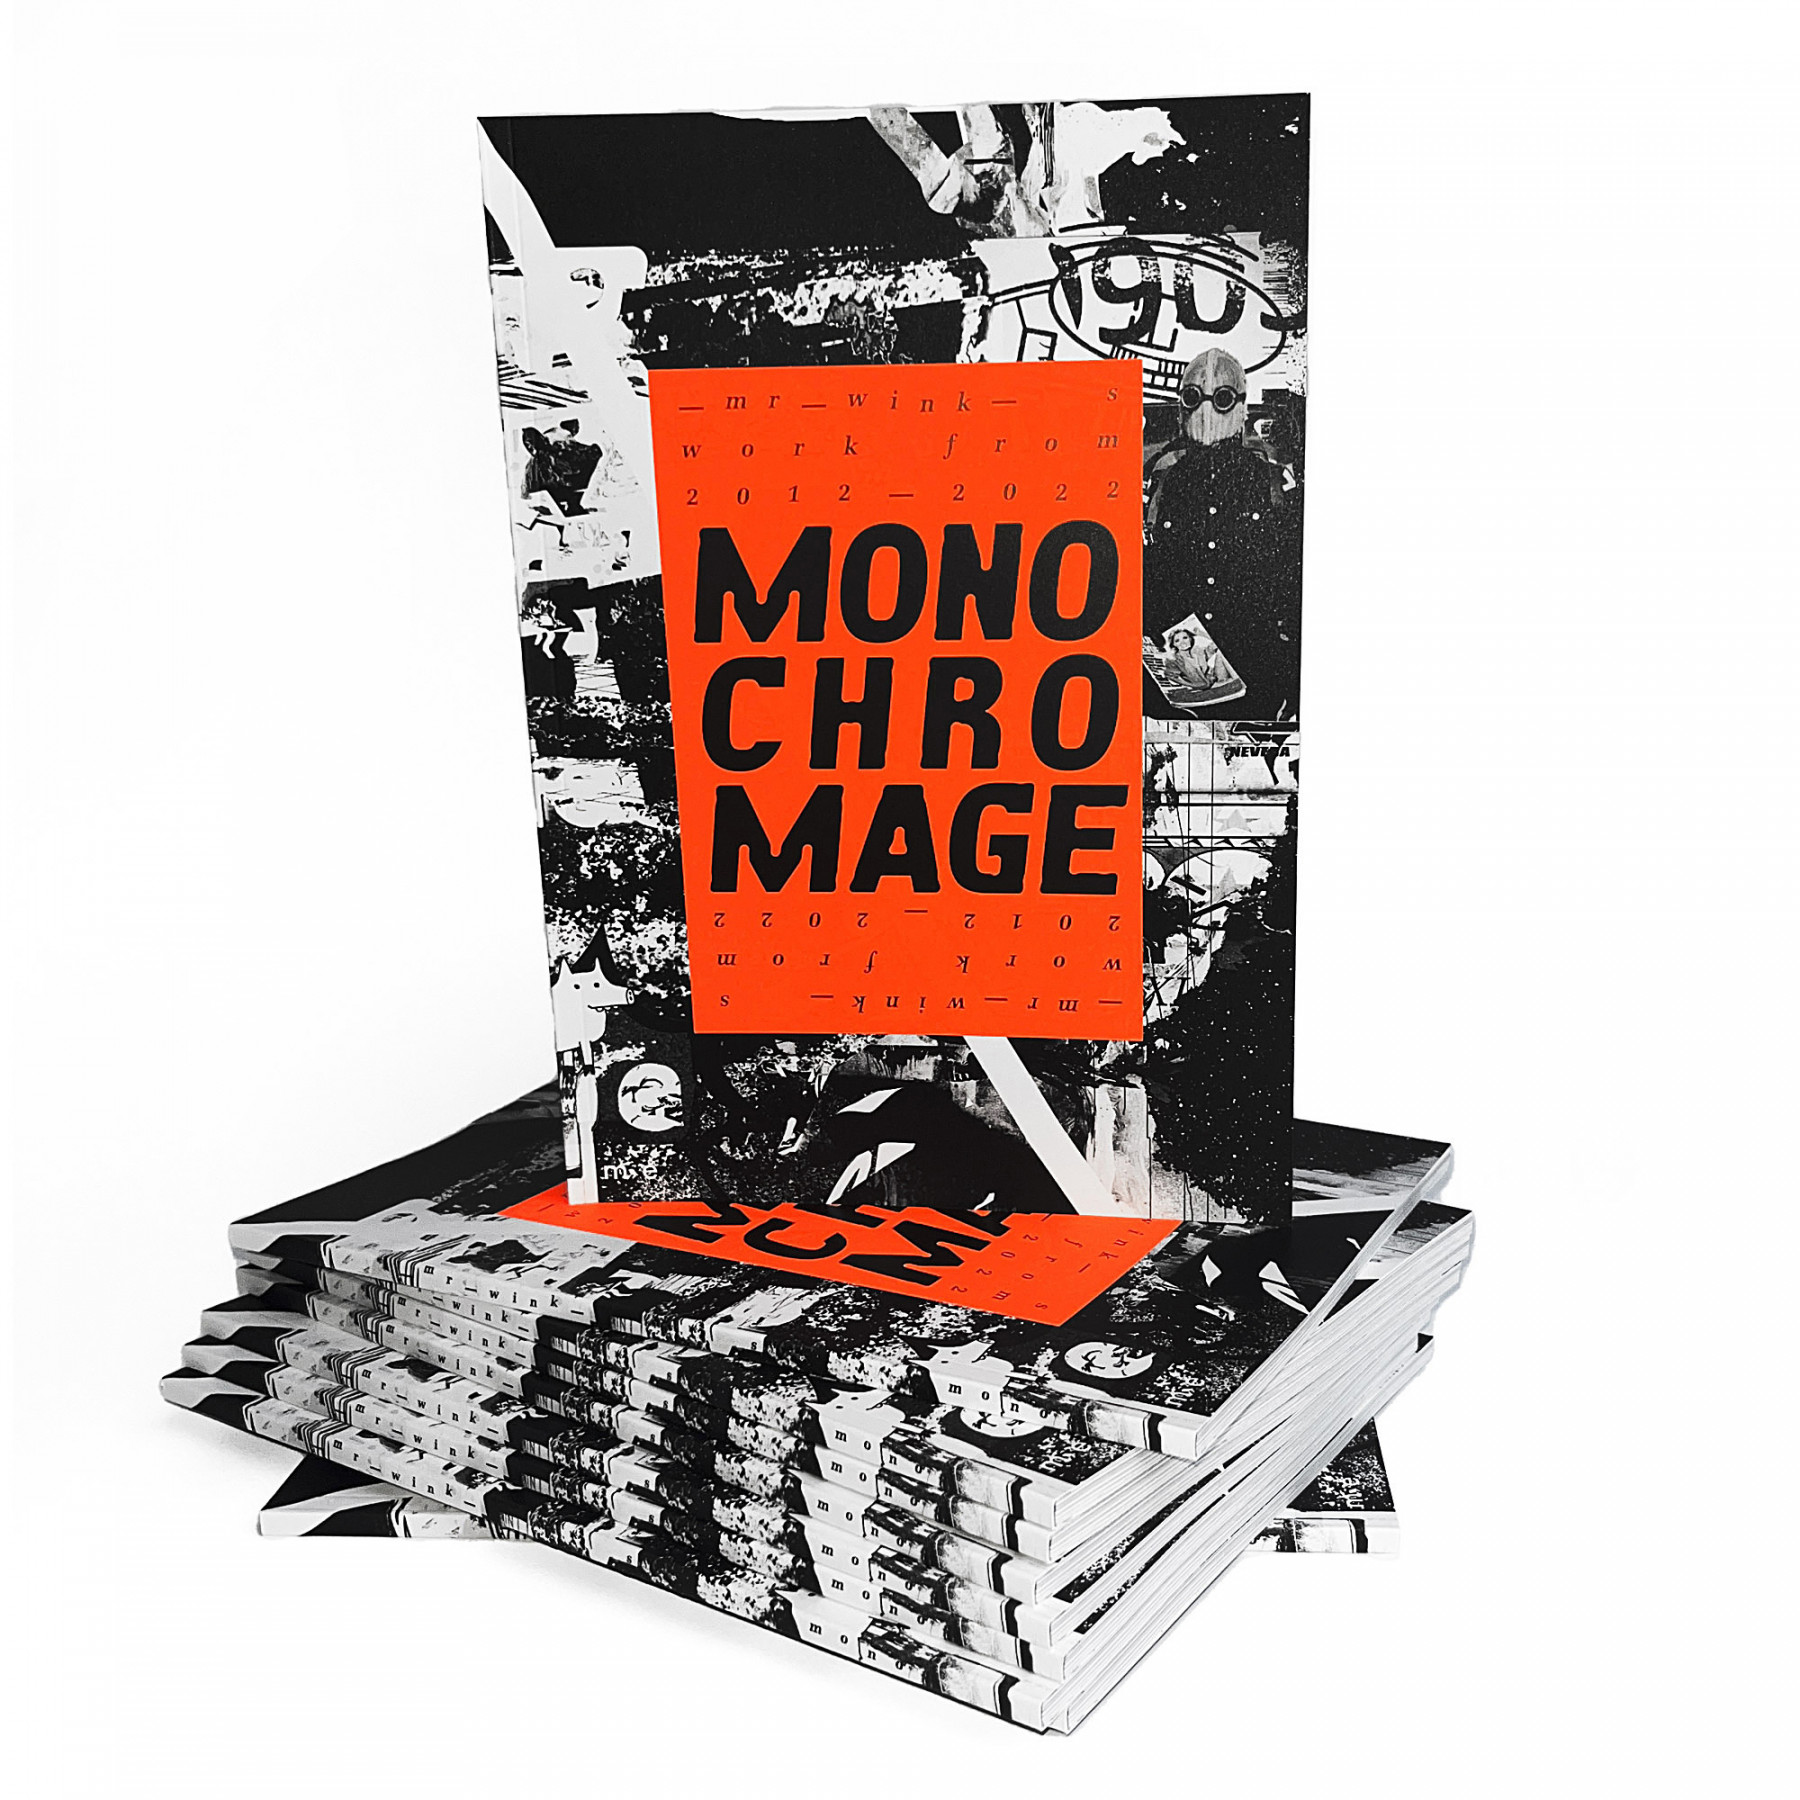 Mono chro mage. Artbook. 28